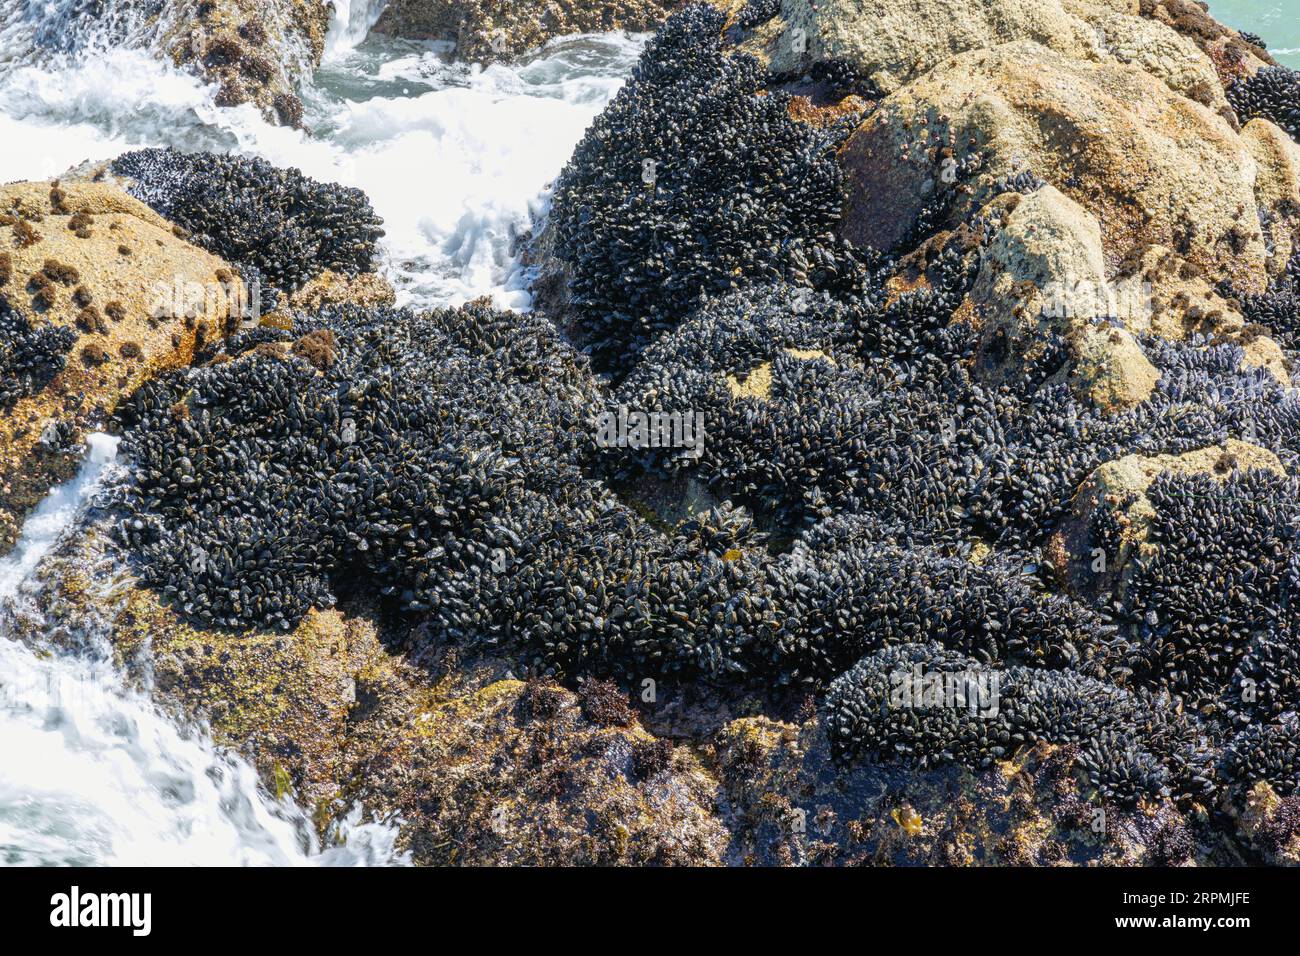 Moules (Mytiloidea), banc de moules sur un rocher dans le surf, USA, Californie, Monterey Banque D'Images